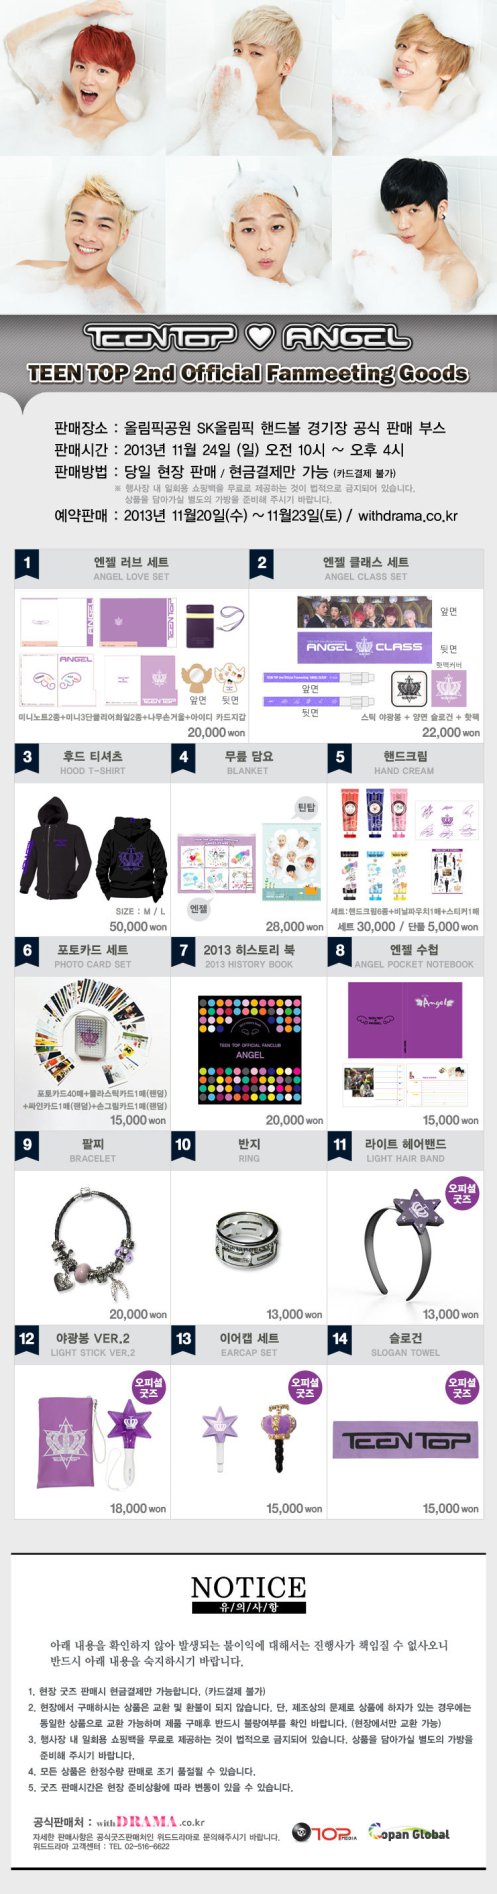 Teen Top 2nd Official Fan Meeting Merchandise